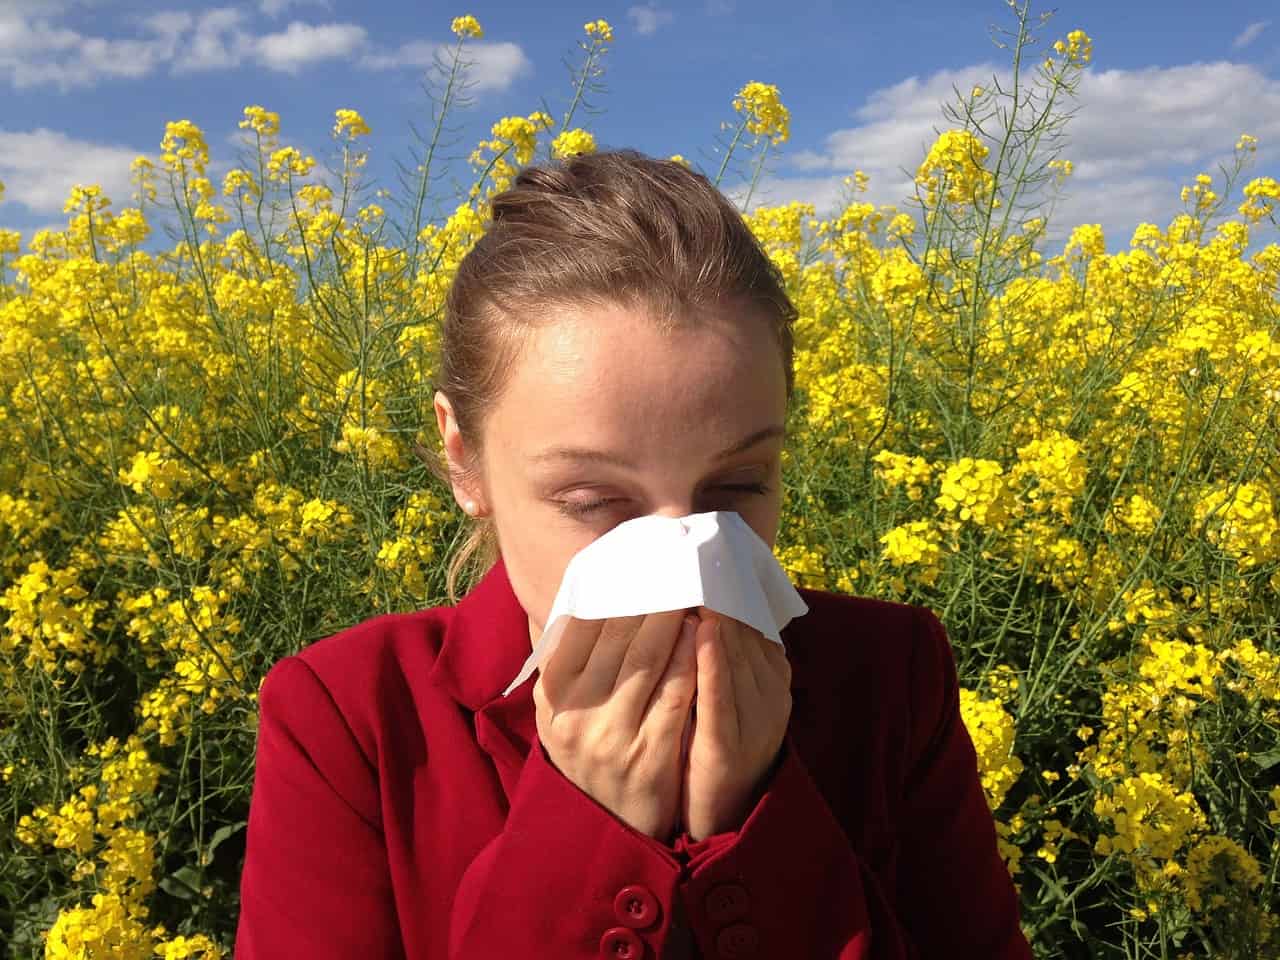 Le allergie alimentari: quali sono, come si manifestano